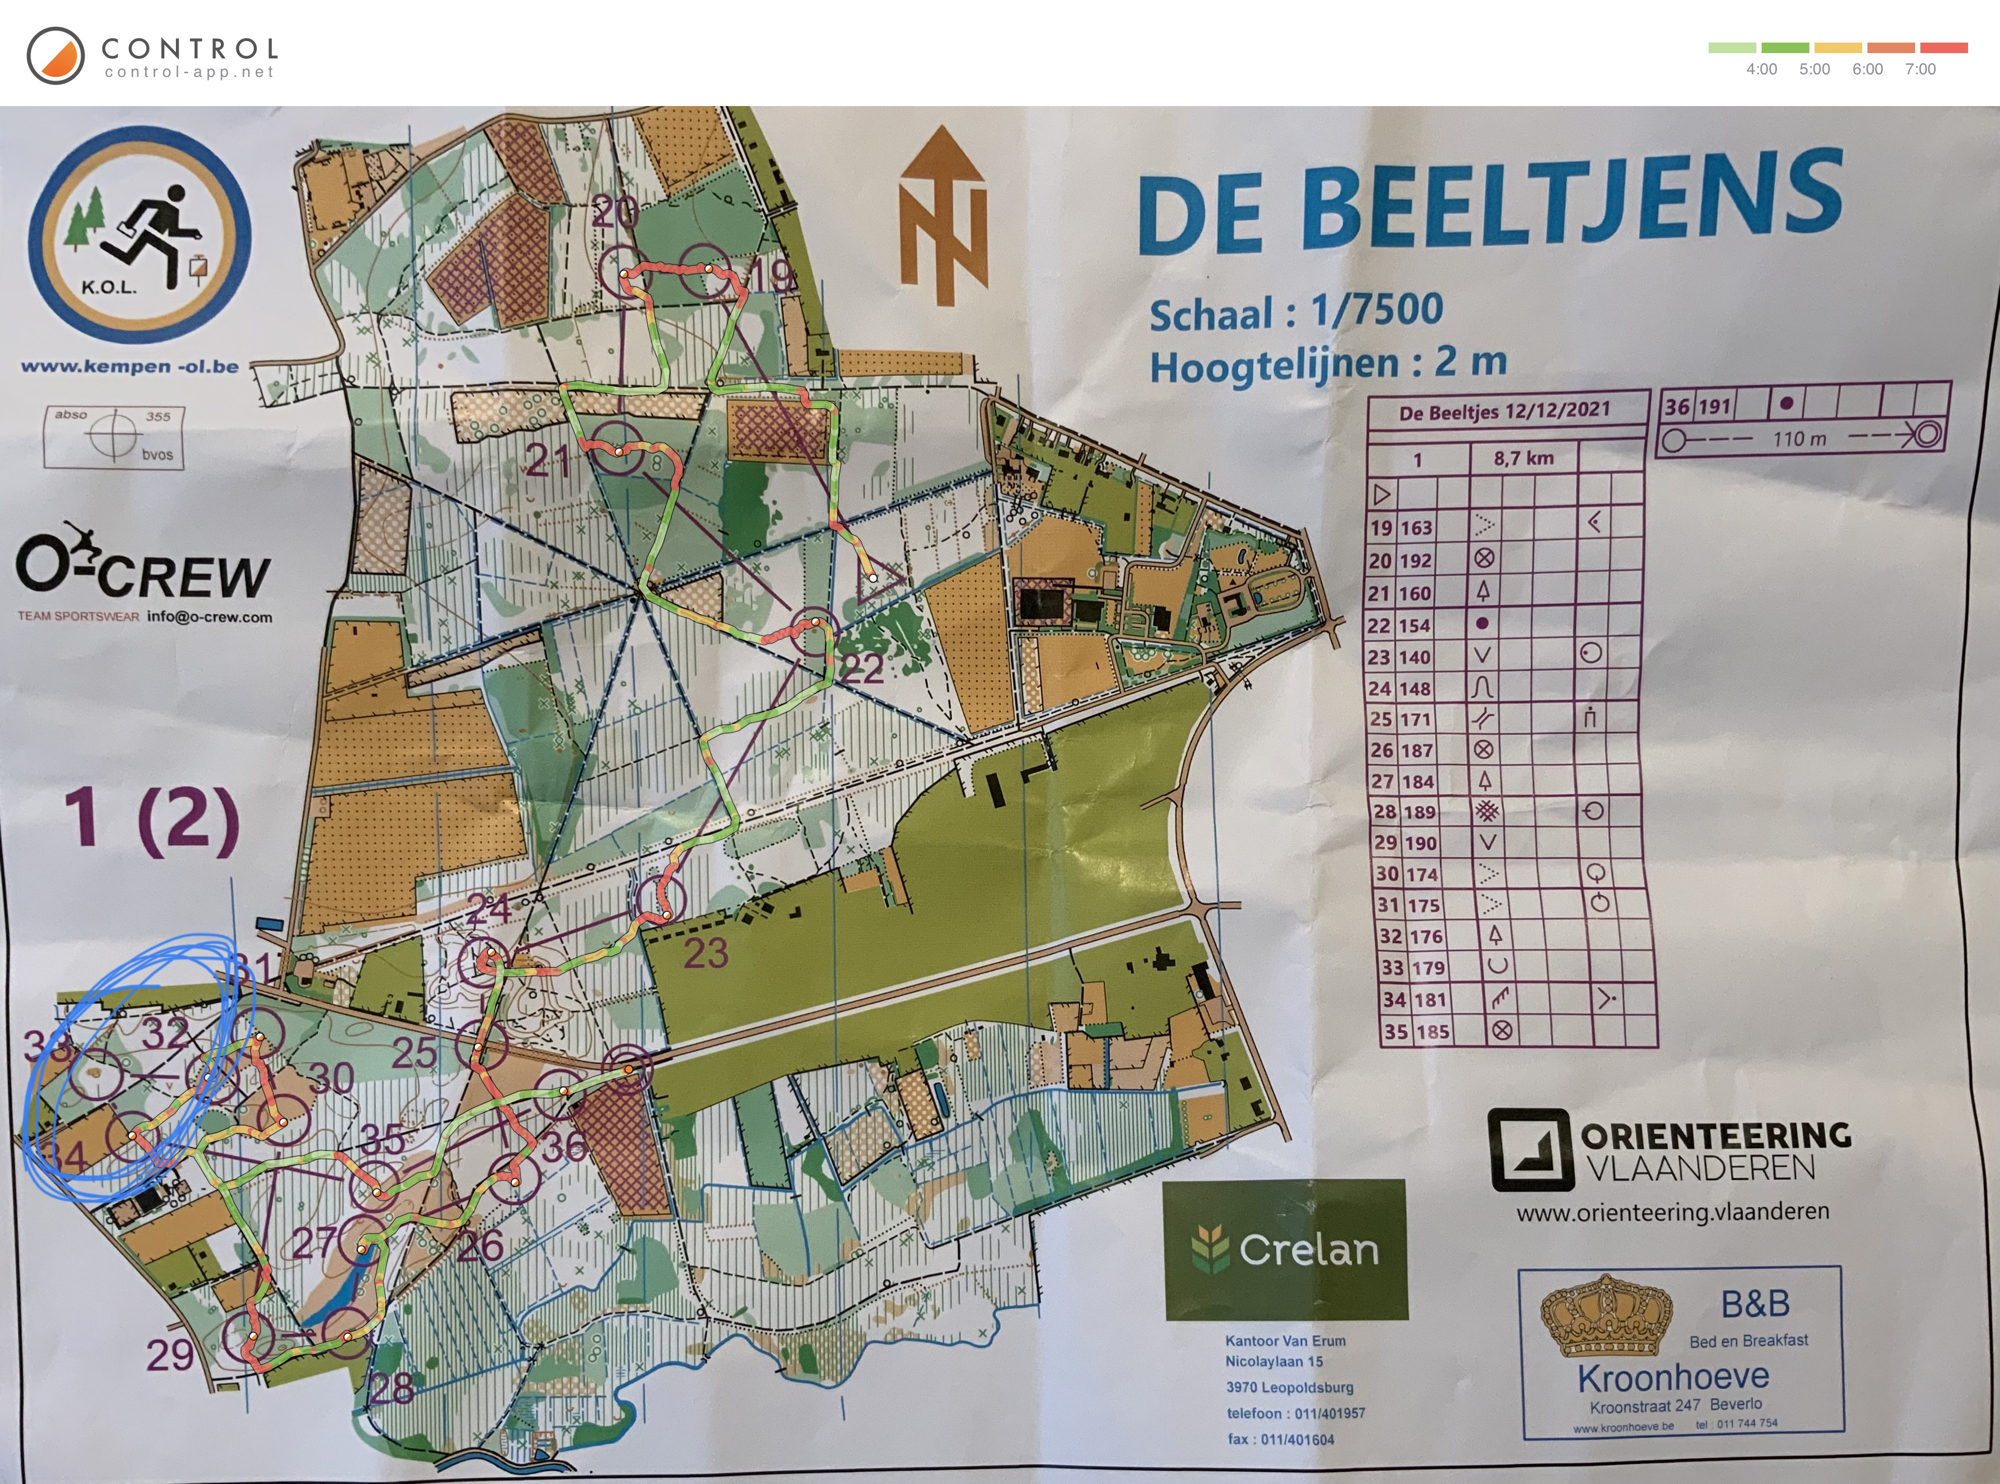 Regionale de Beeltjens - omloop 1 (kaart 2) (12/12/2021)